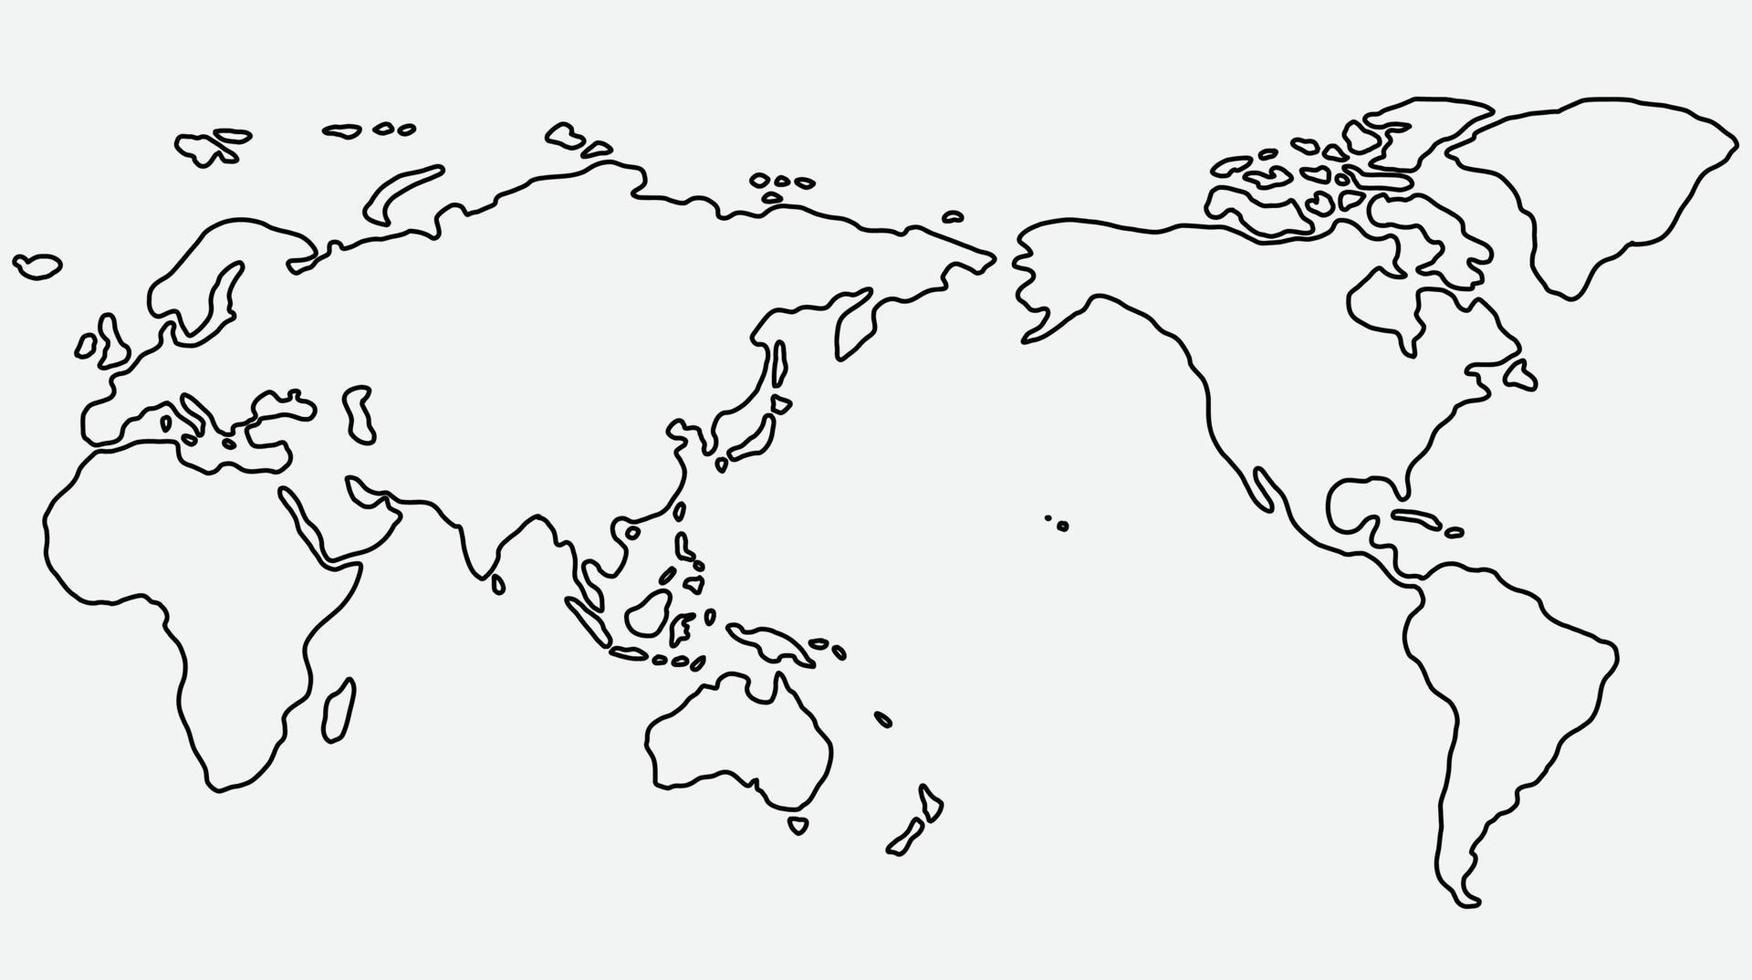 Bosquejo del mapa del mundo a mano alzada sobre fondo blanco. vector